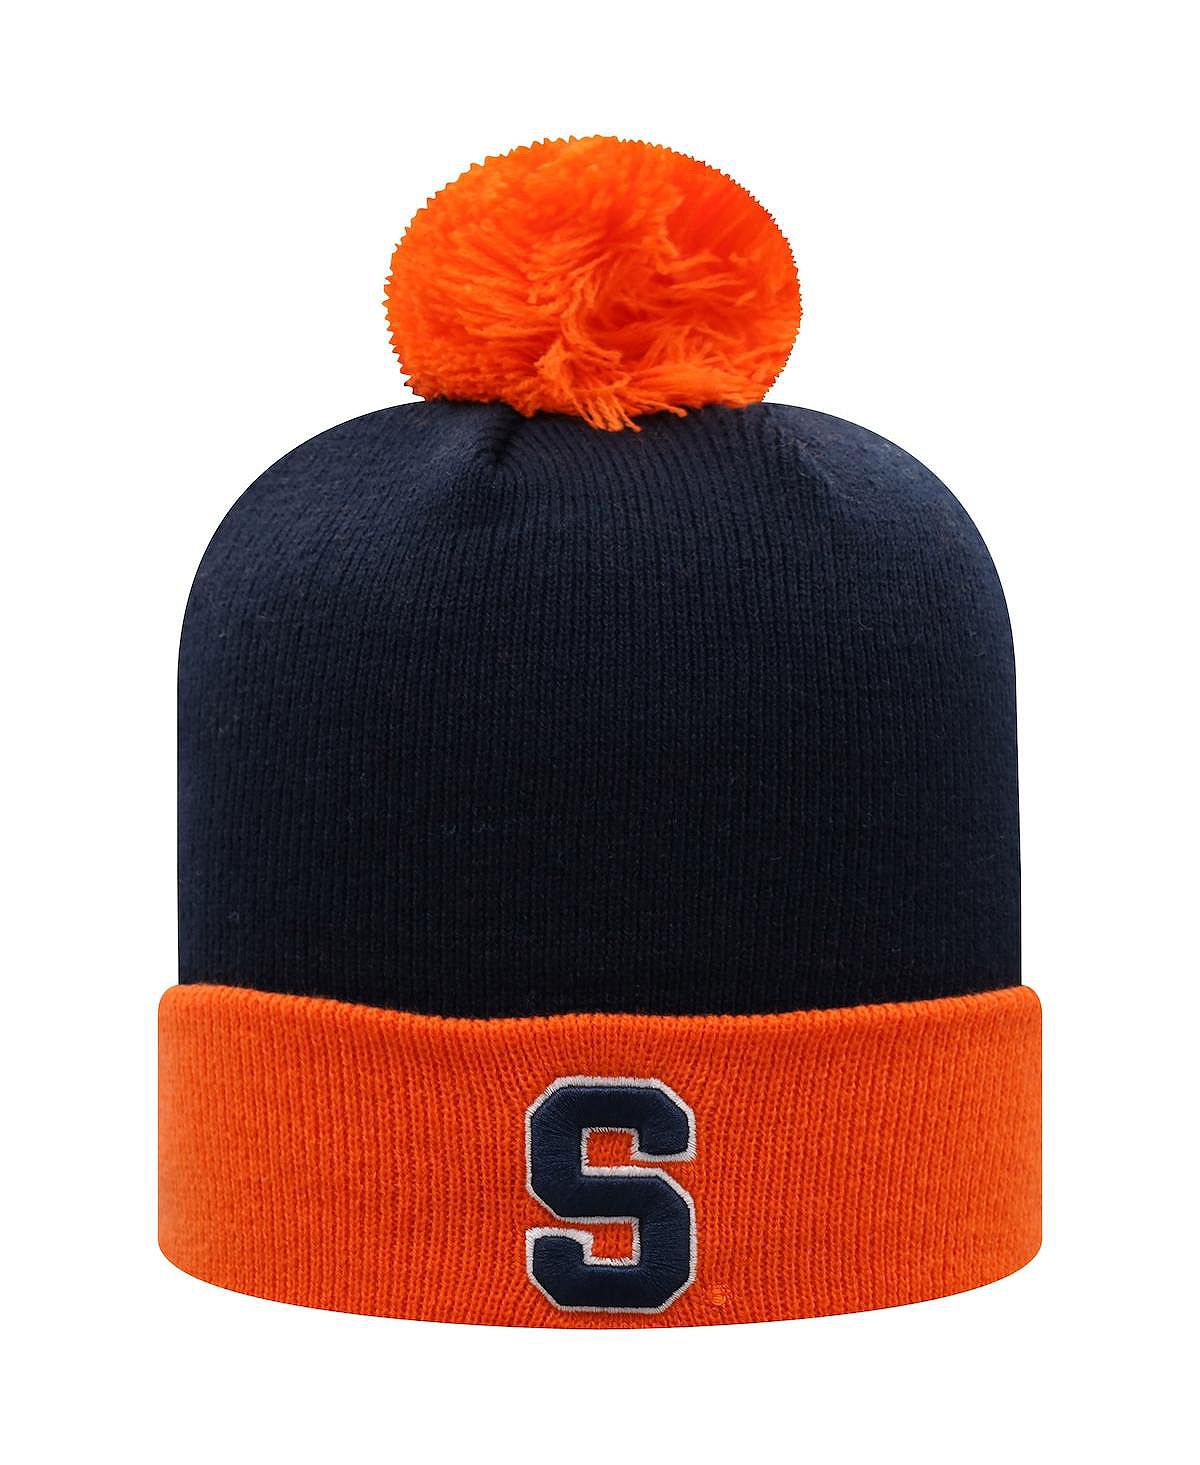 Мужская двухцветная вязаная шапка с манжетами и помпоном, темно-синяя и оранжевая Syracuse Orange Core Top of the World